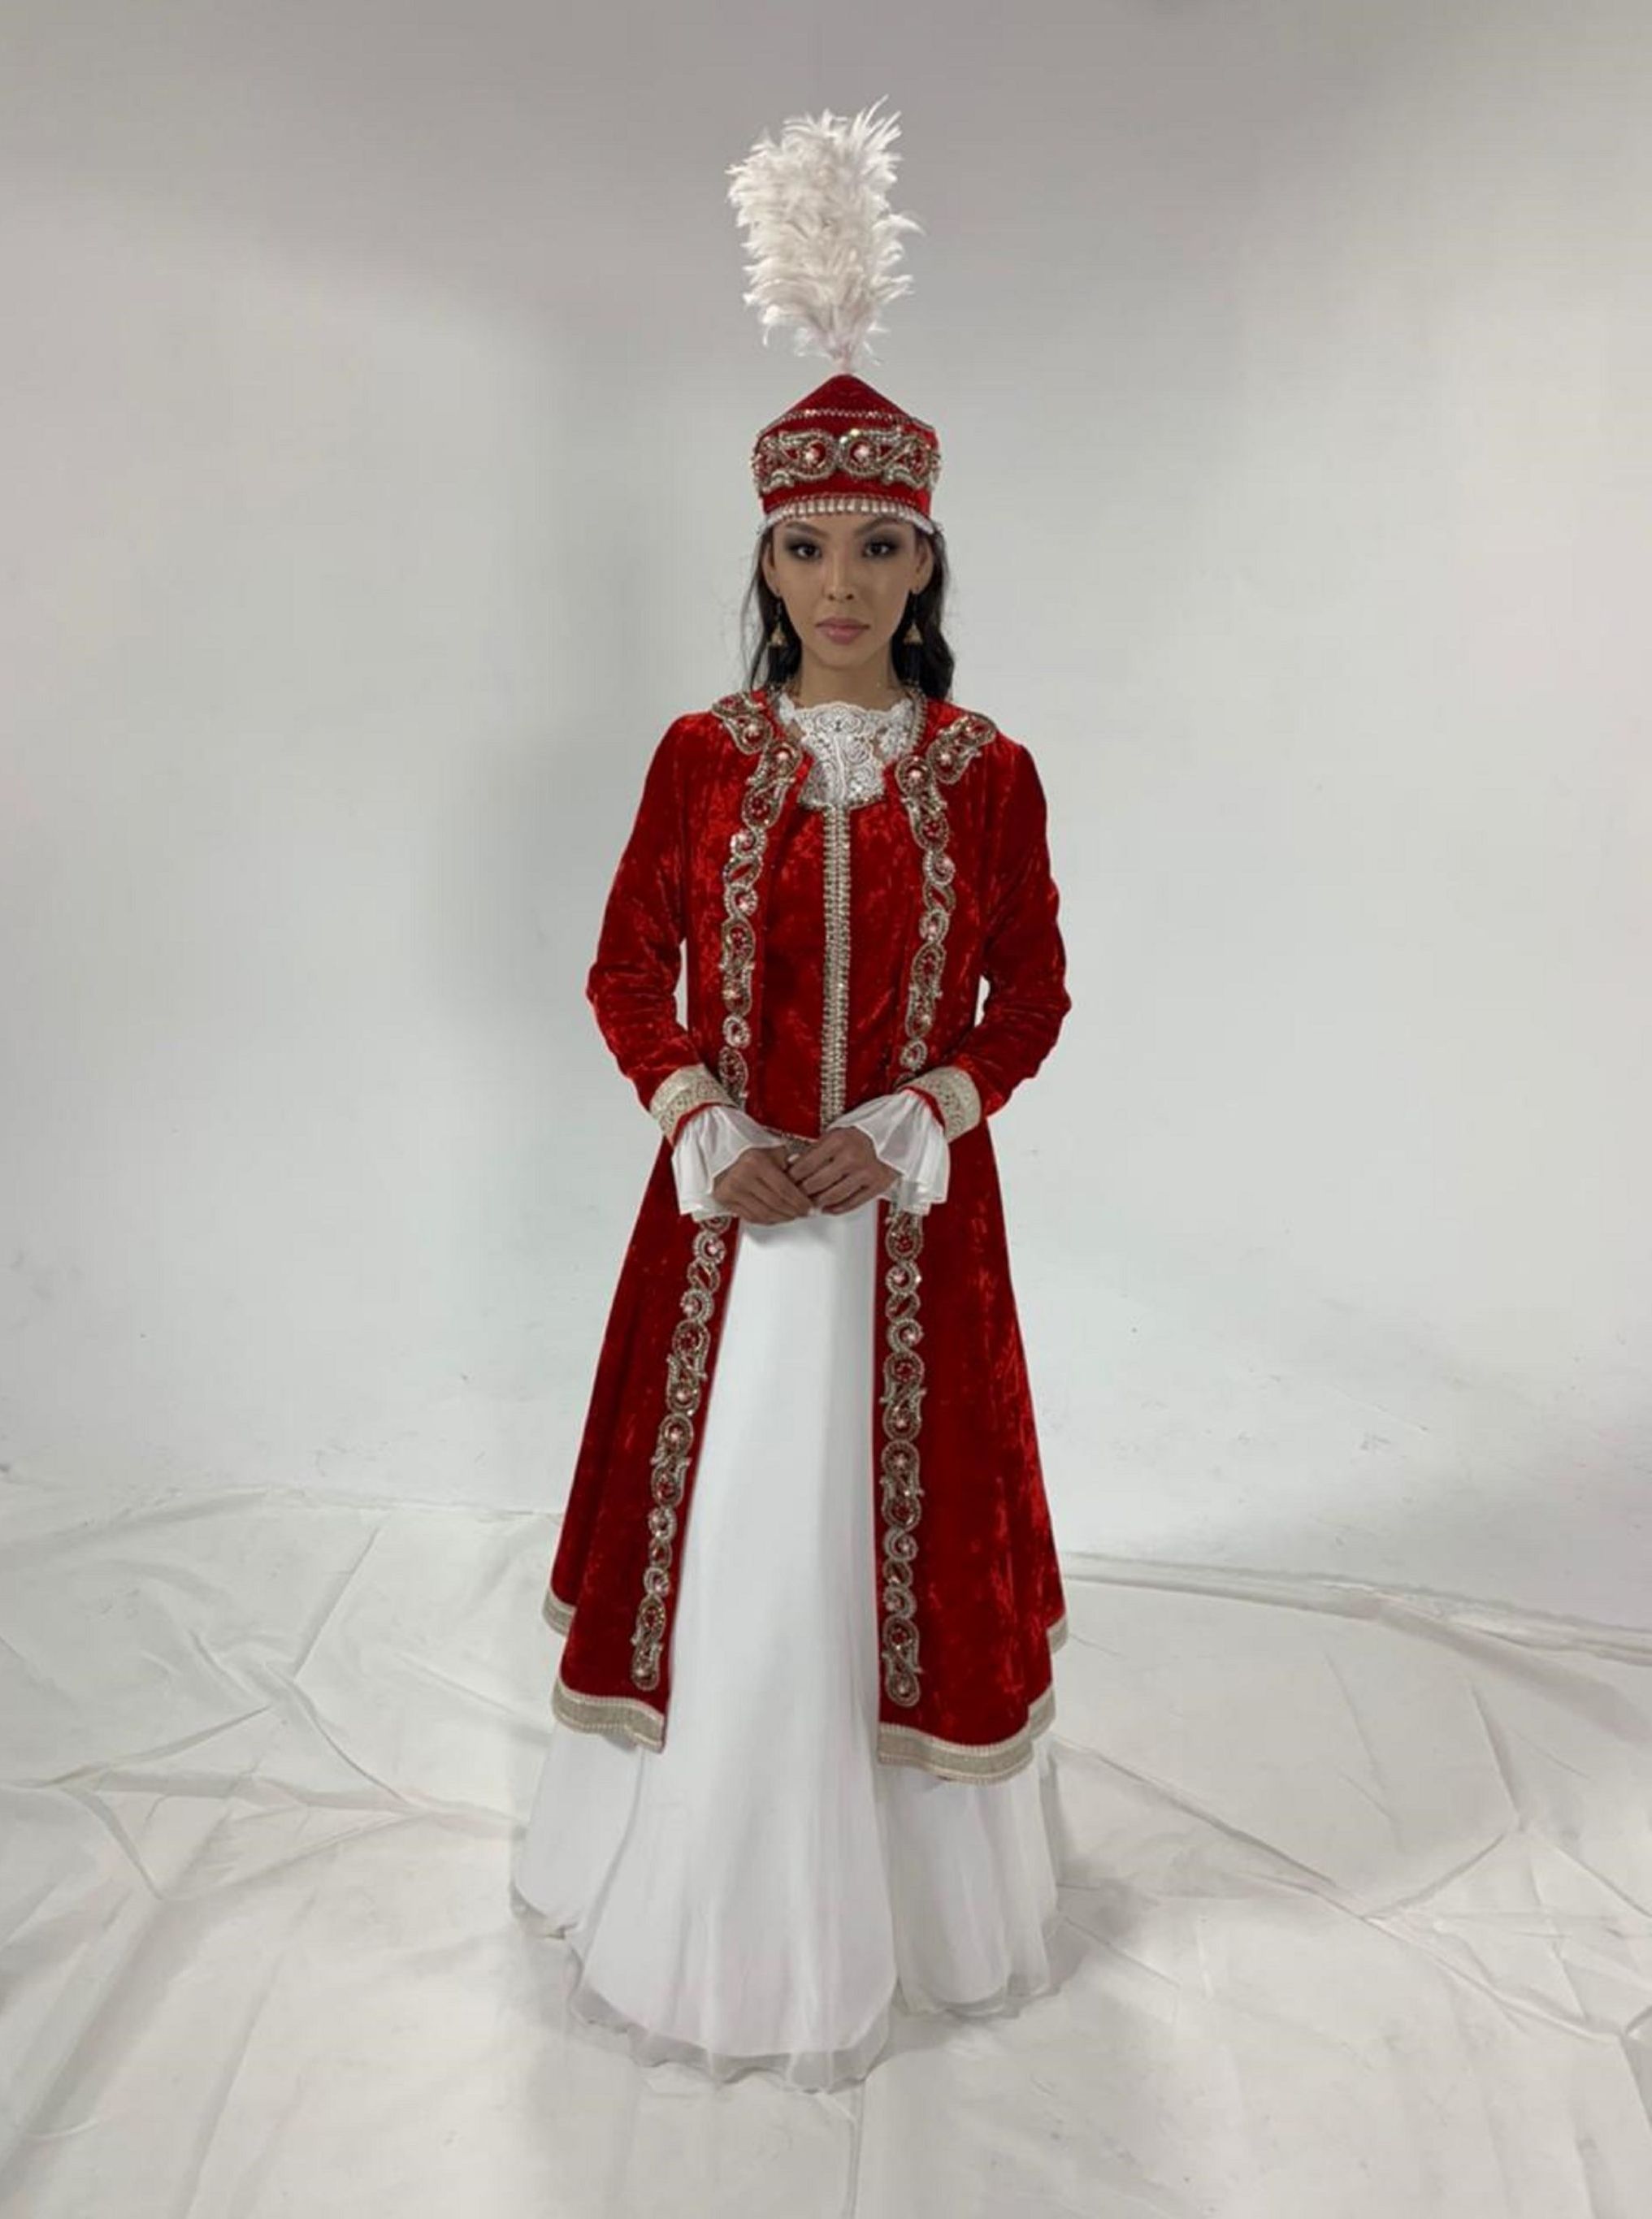 Кызылординка Камилла Сарыбай представит Казахстан на конкурсе Мисс Вселенная